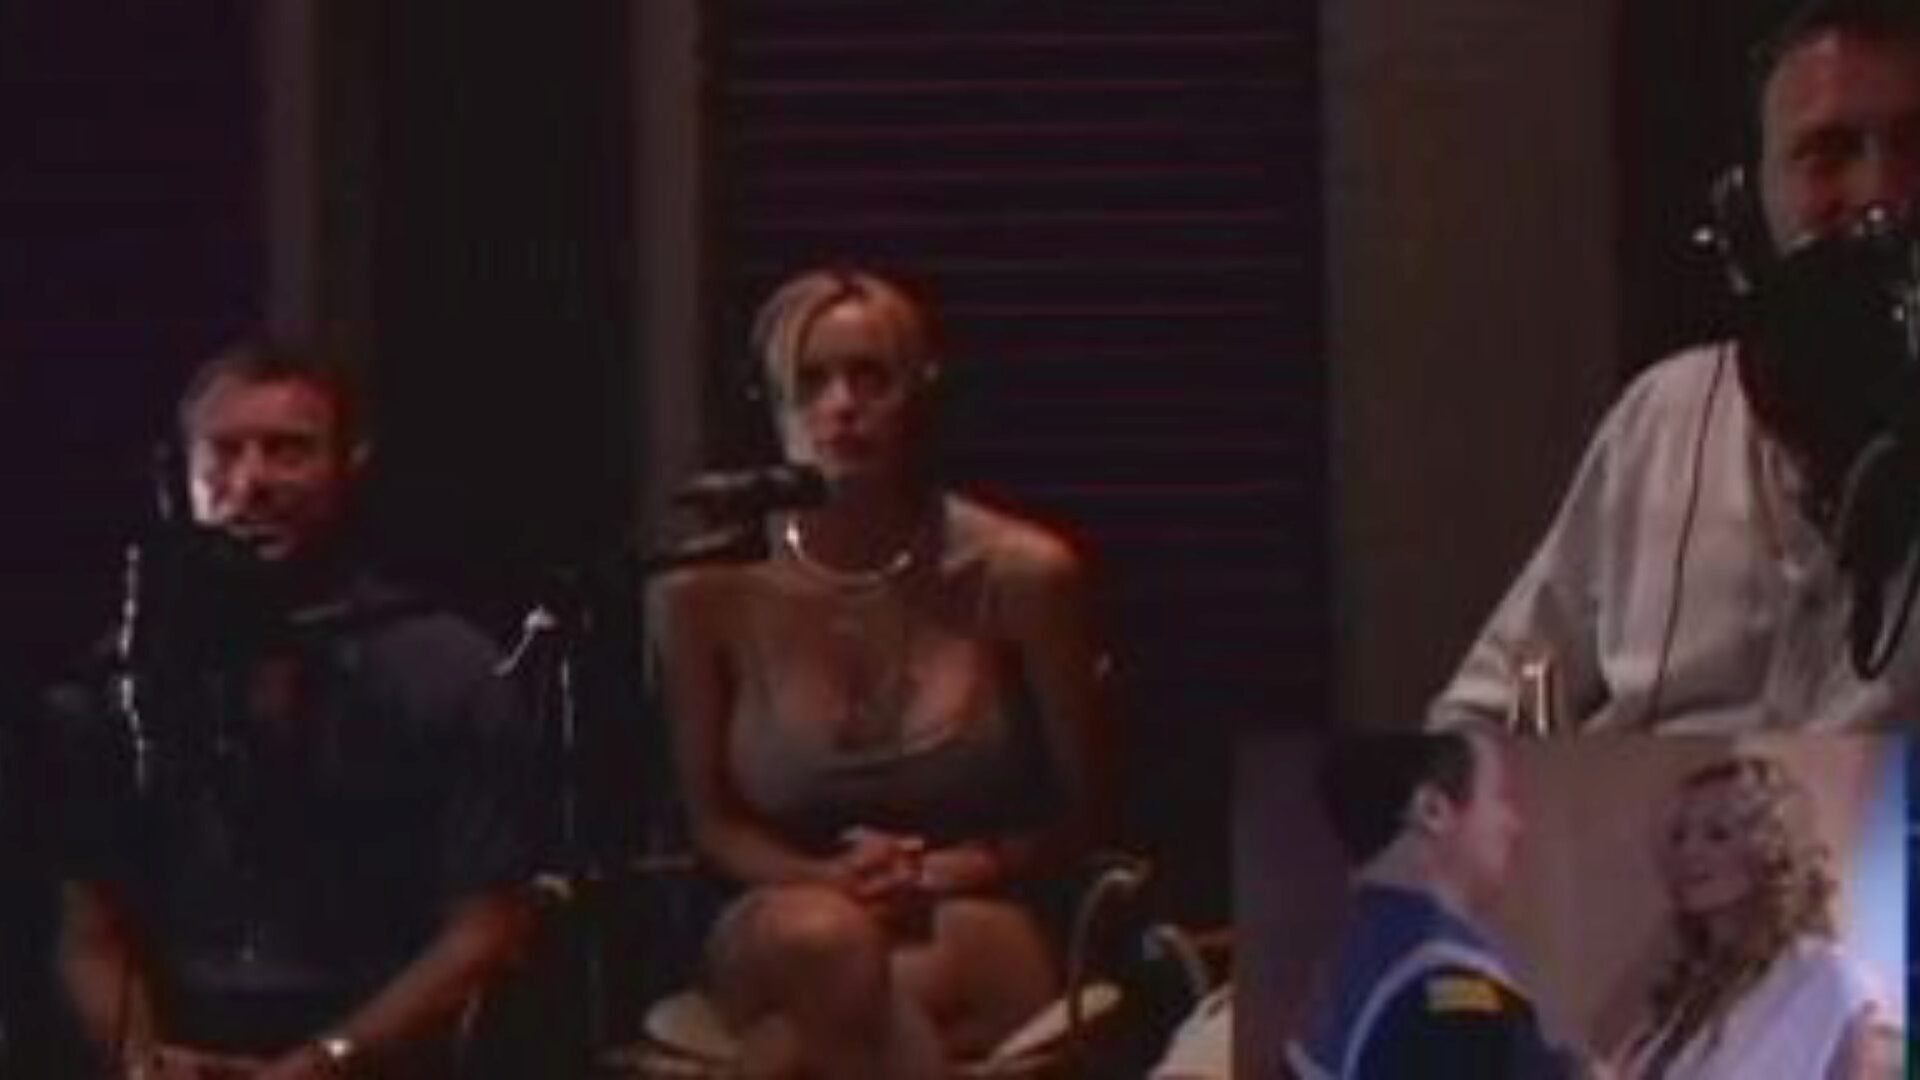 חלל אגוזים 2003: סרטון פורנו בחינם 8c - xhamster צפה בחלל אגוזים 2003 קליפ חיבור לצינור בחינם לכולם ב- xhamster, עם האוסף הכי סקסי של סצינות סרטי פורנוגרפיה רטרו וינטאג '.